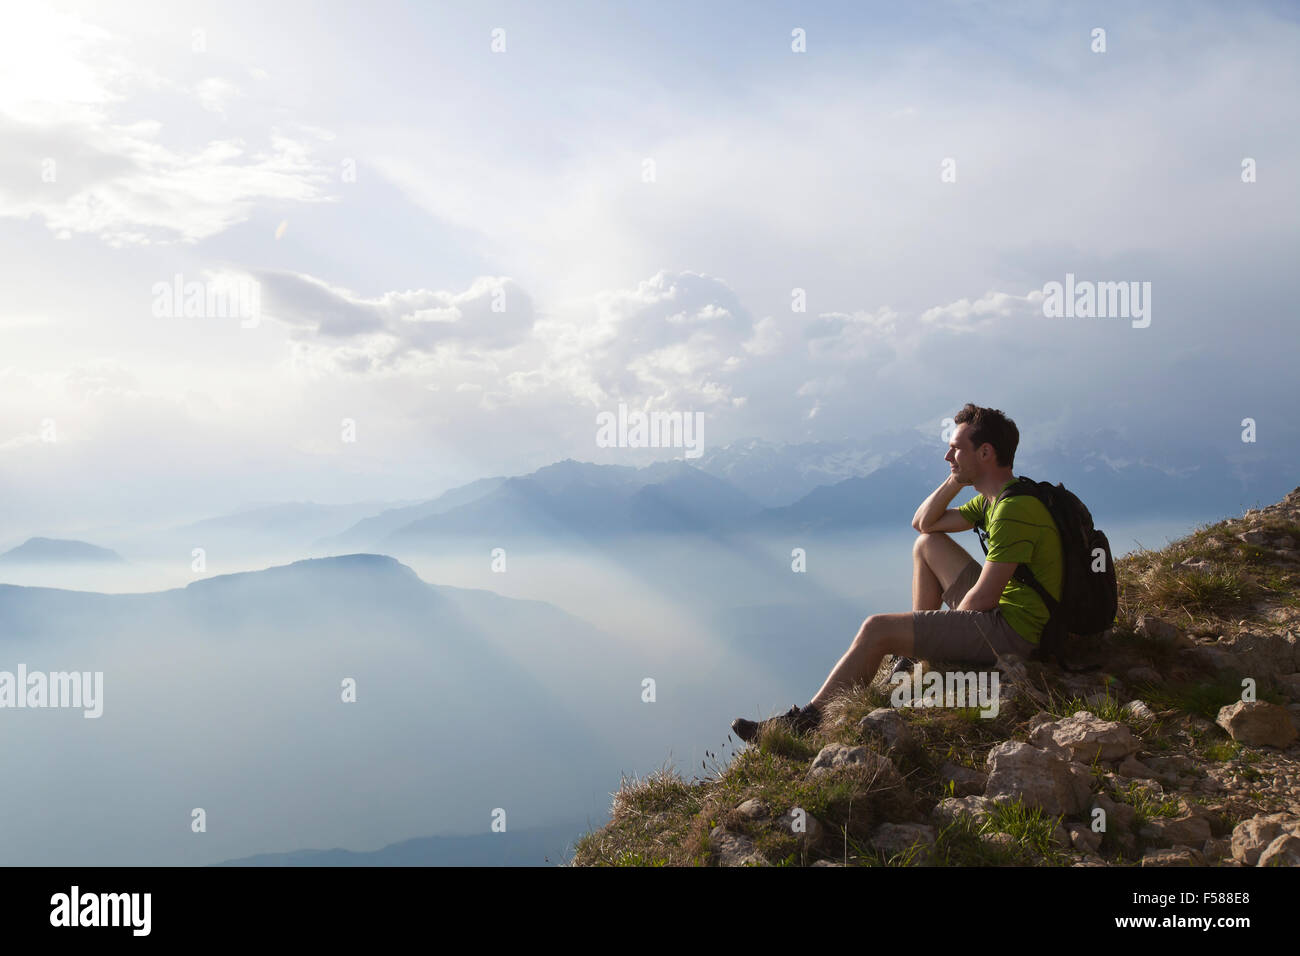 Traveler godendo di una vista panoramica durante l'escursione, bello sfondo con paesaggio di montagna Foto Stock